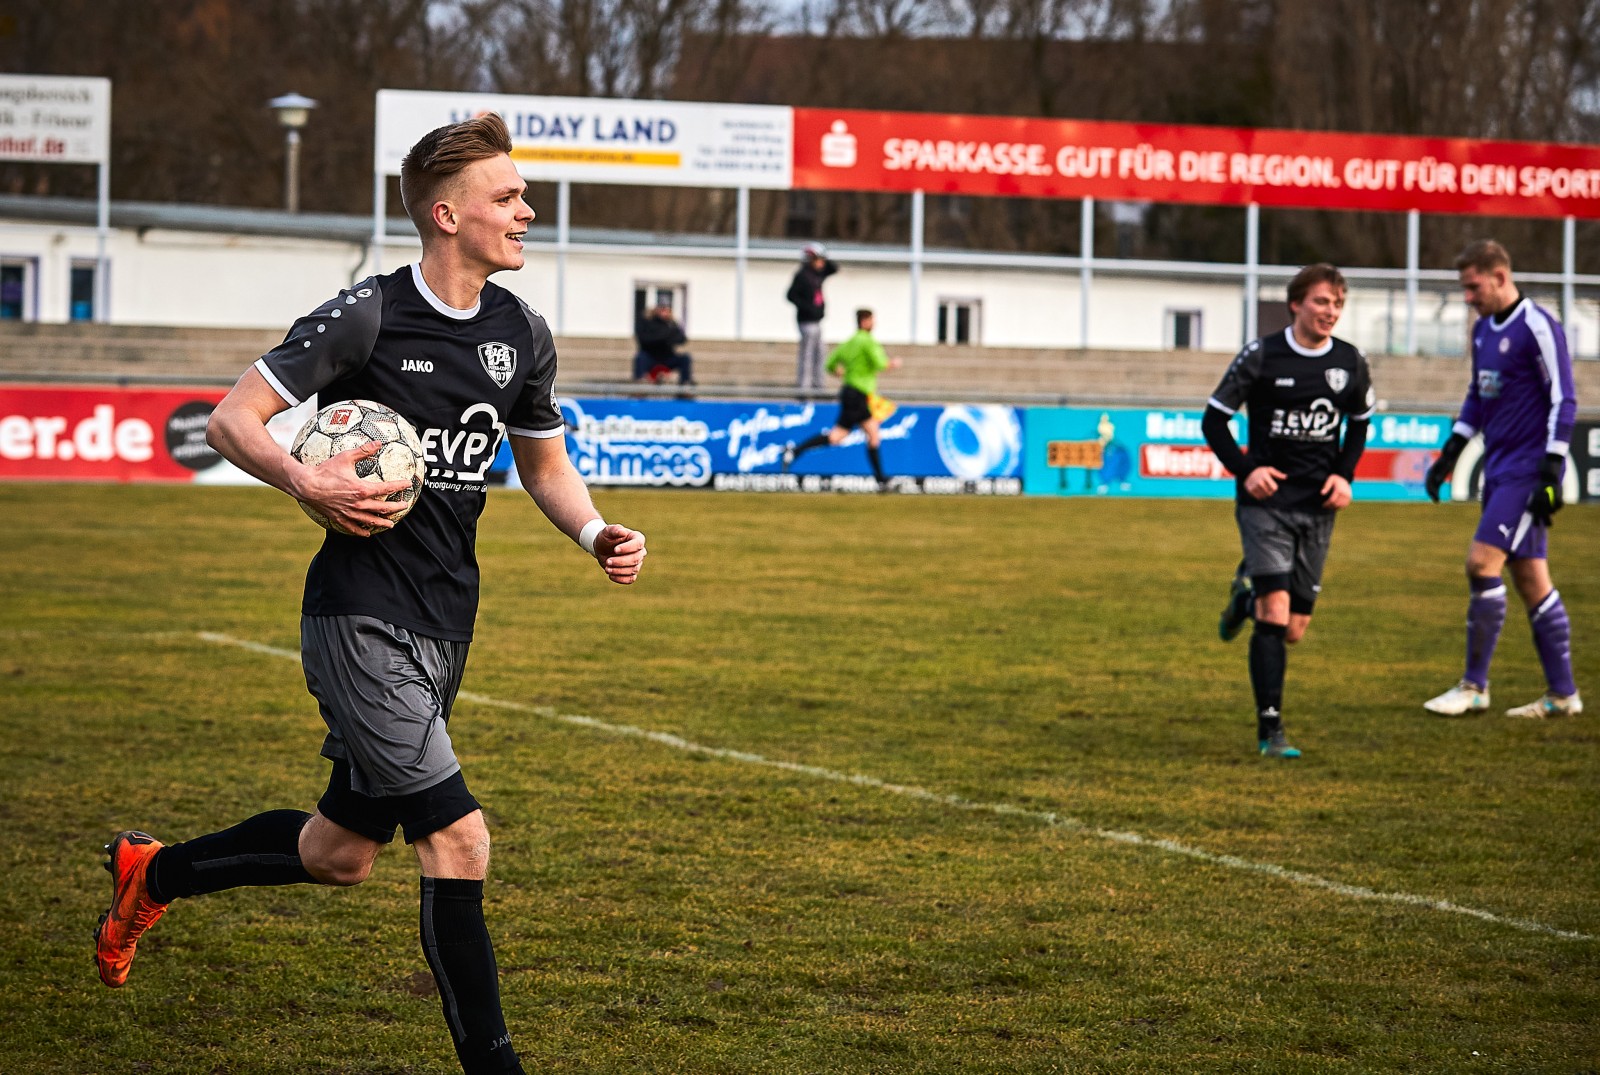 Freude und Optimismus: VfL-Spieler Florian Kärger stürmt mit dem Ball davon. Foto: Marko Förster